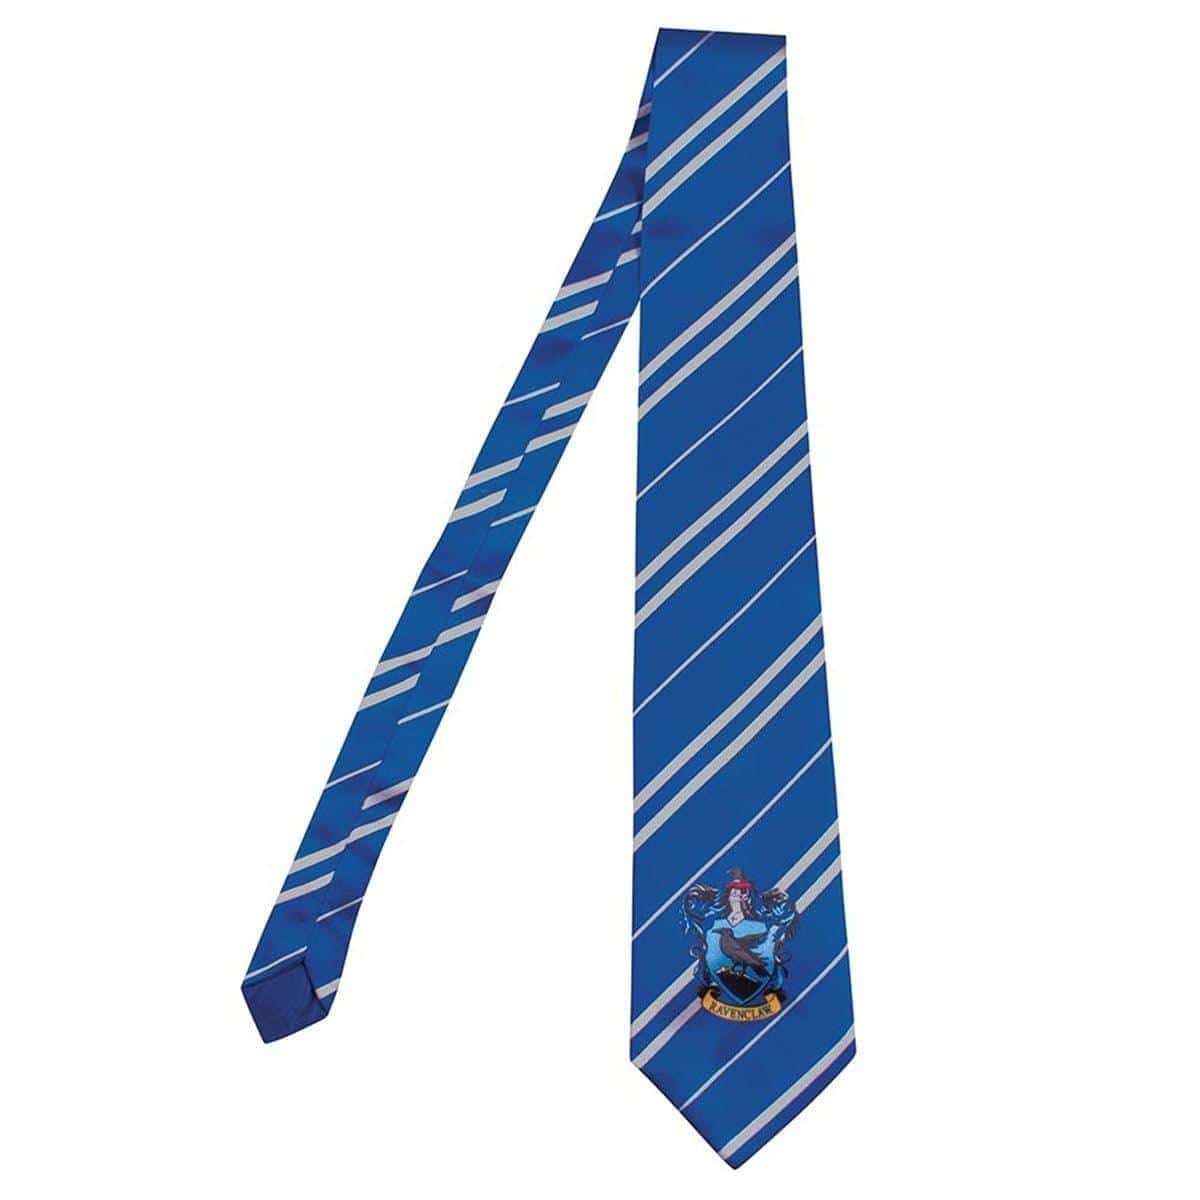 Harry Potter Cravates 4 couleurs Cosplay Accessoire –